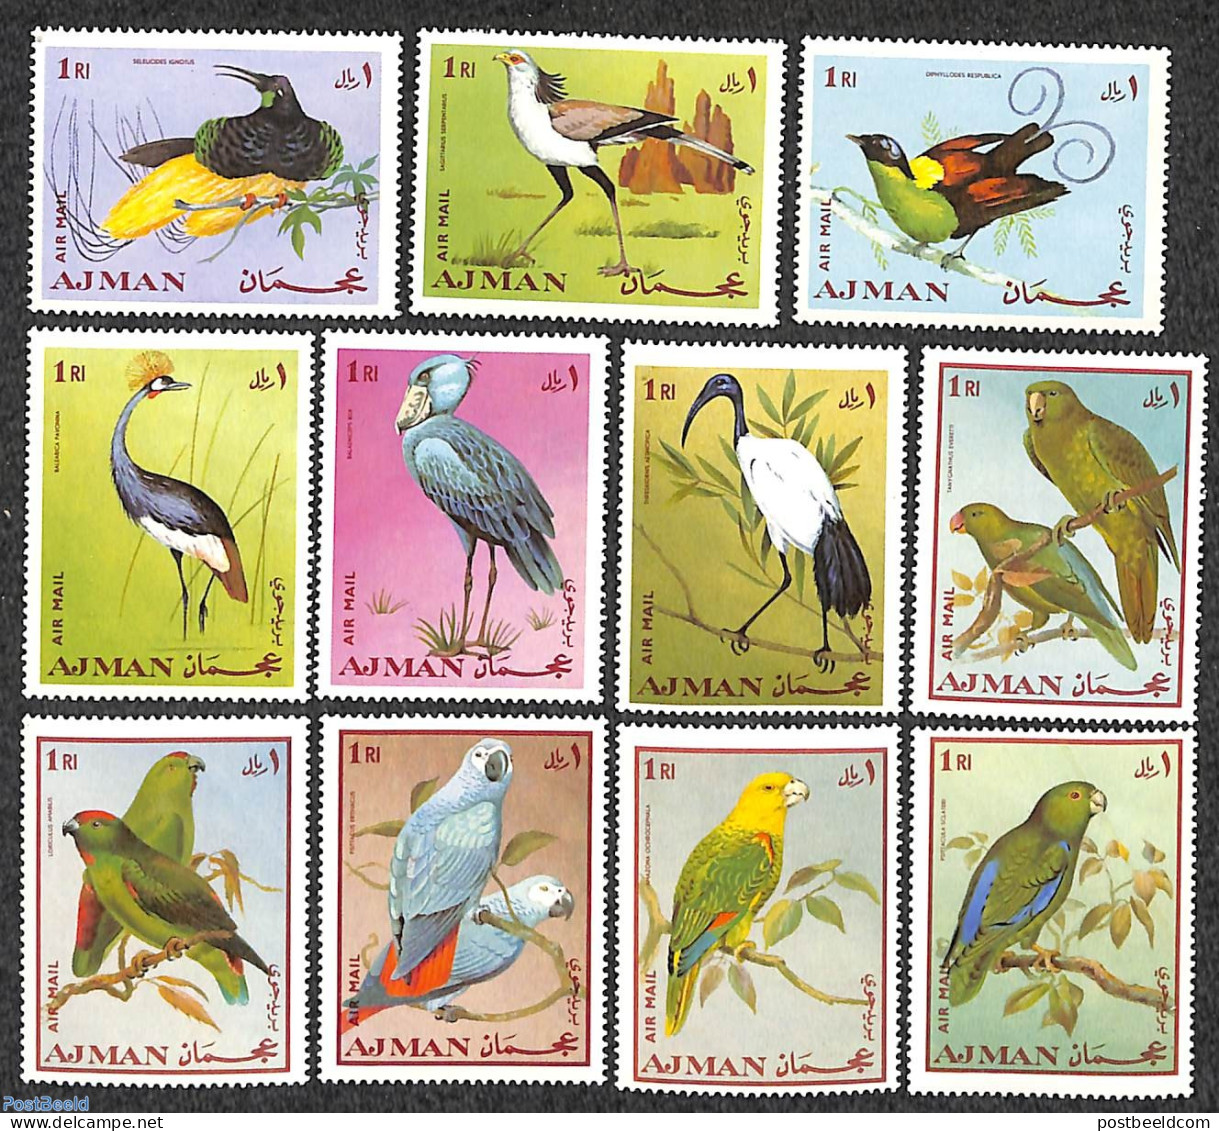 Ajman 1969 Birds 11v, Mint NH, Nature - Birds - Adschman